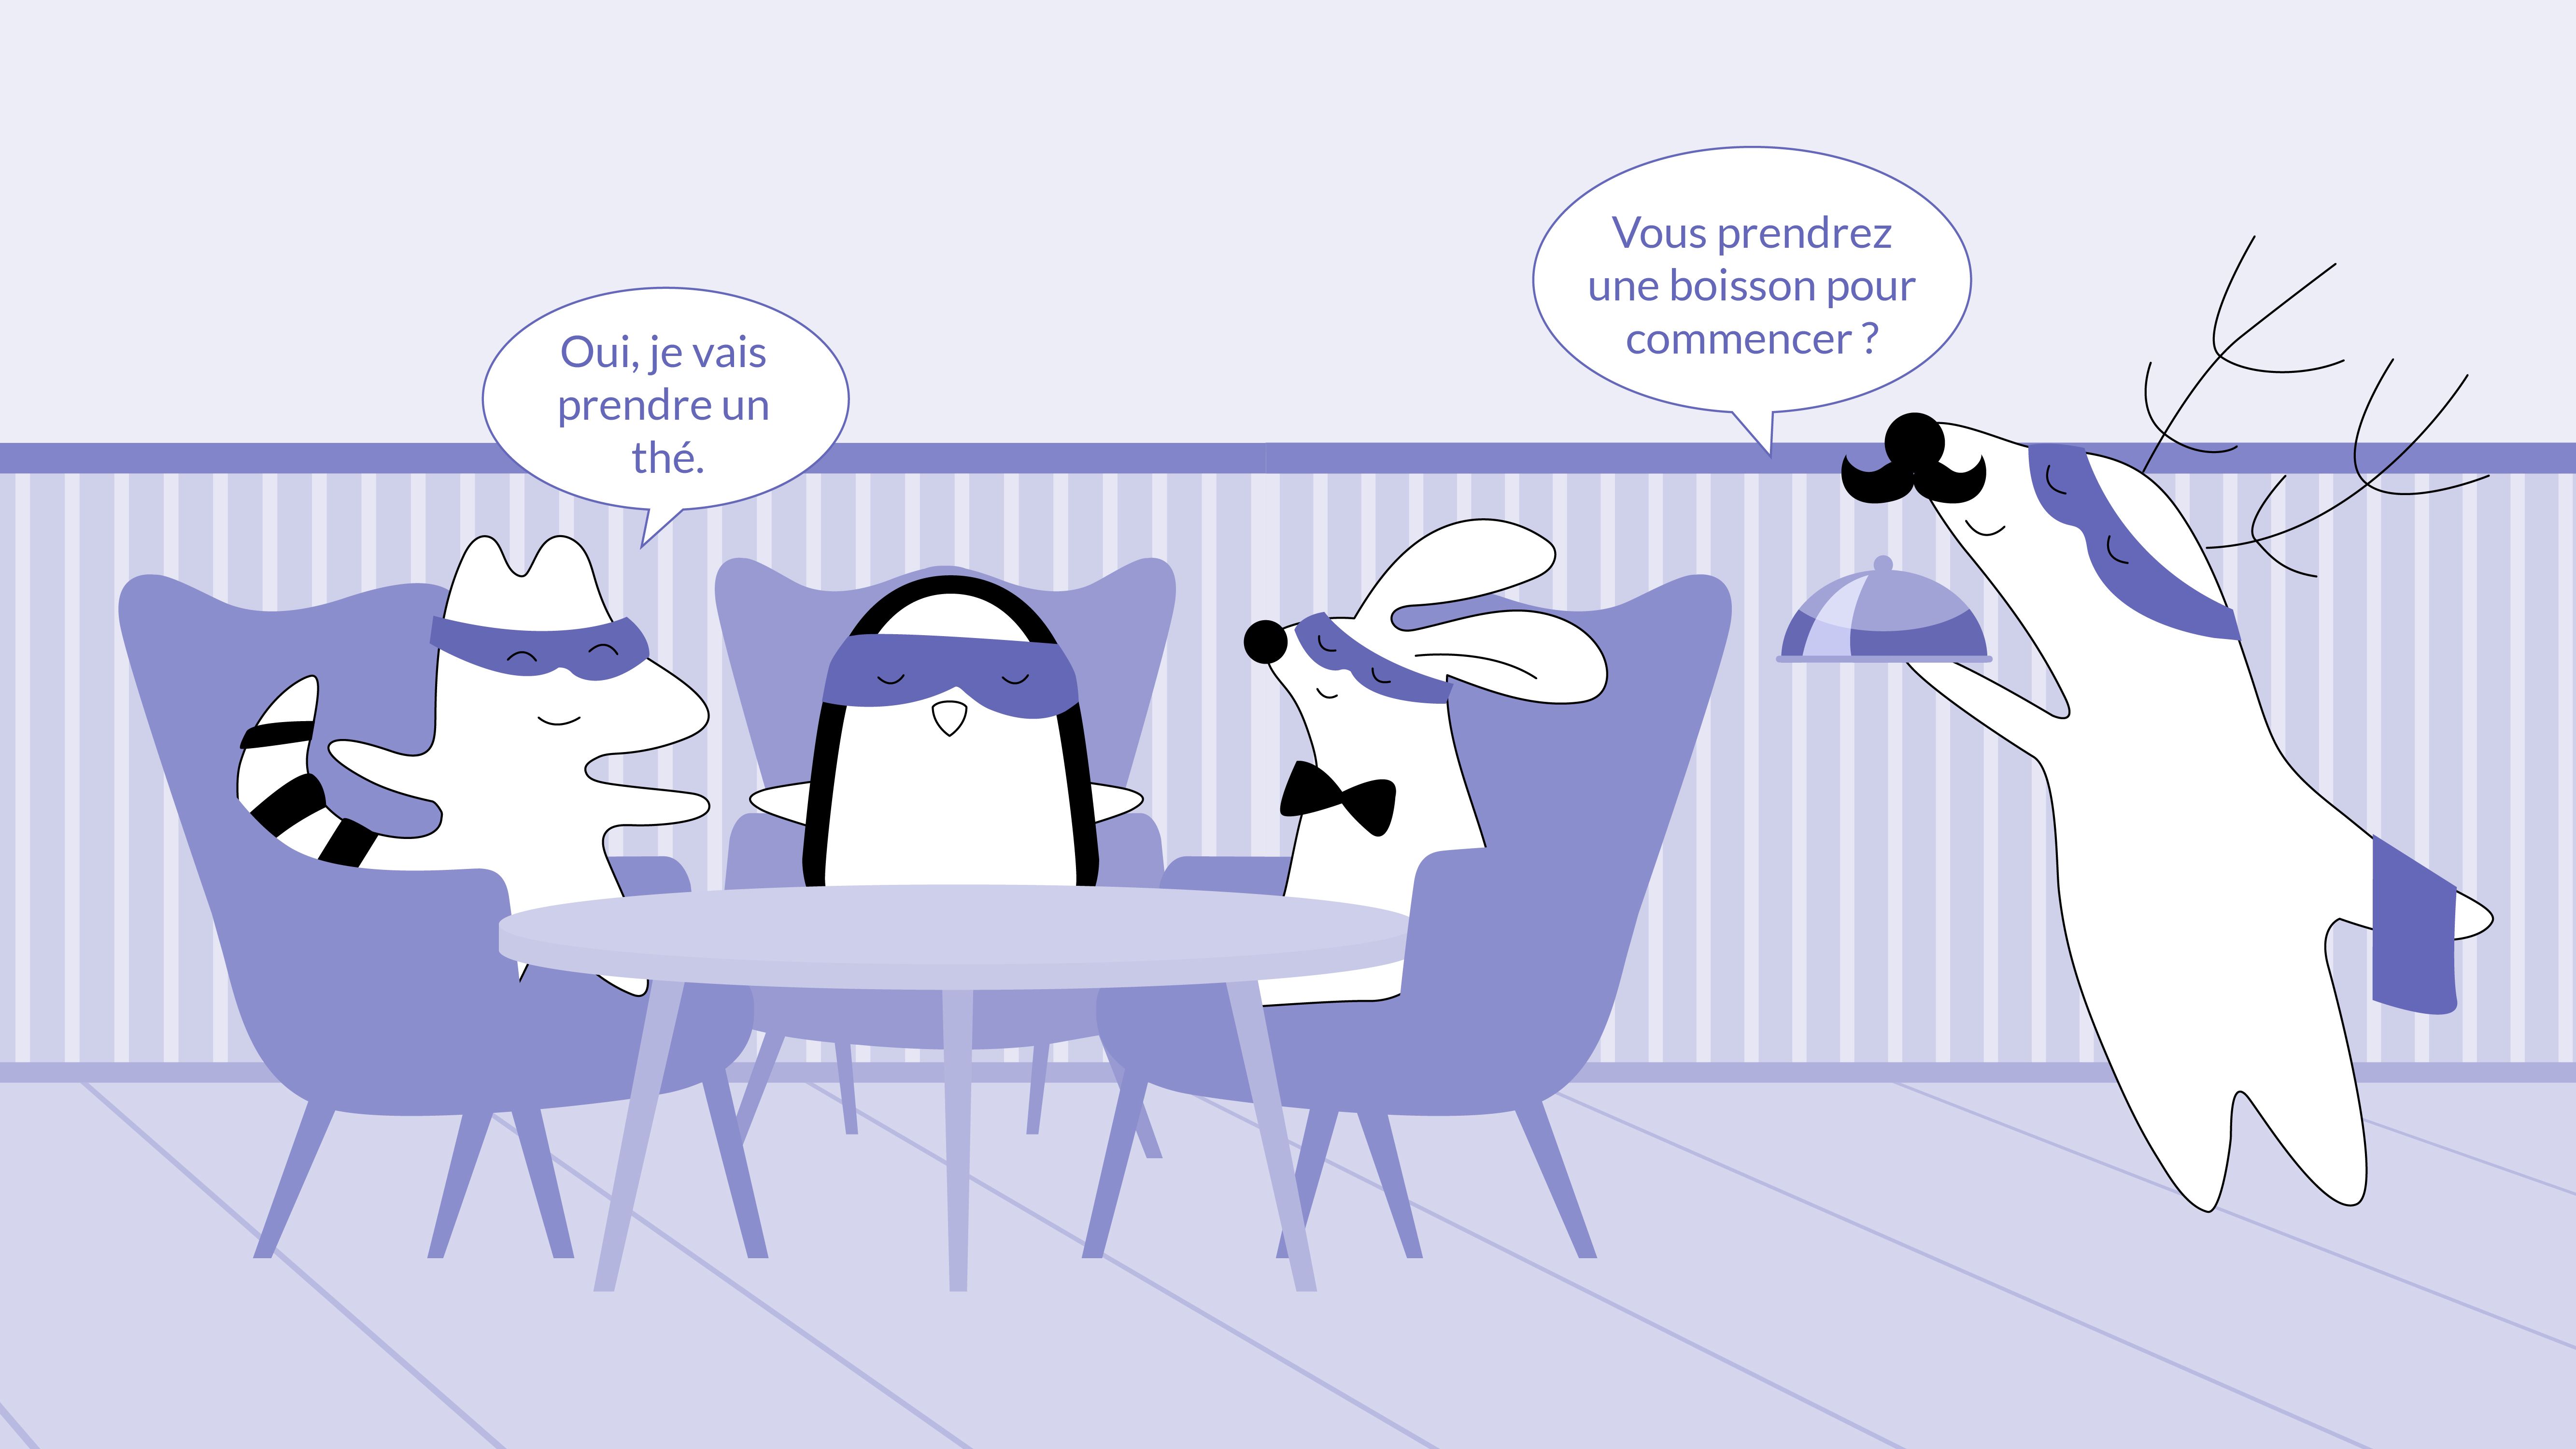  Iggy, the waiter, asking Mr. Rabbit and Soren: “Vous prendrez une boisson pour commencer ?” and Soren responding: “Oui, je vais prendre un thé.”